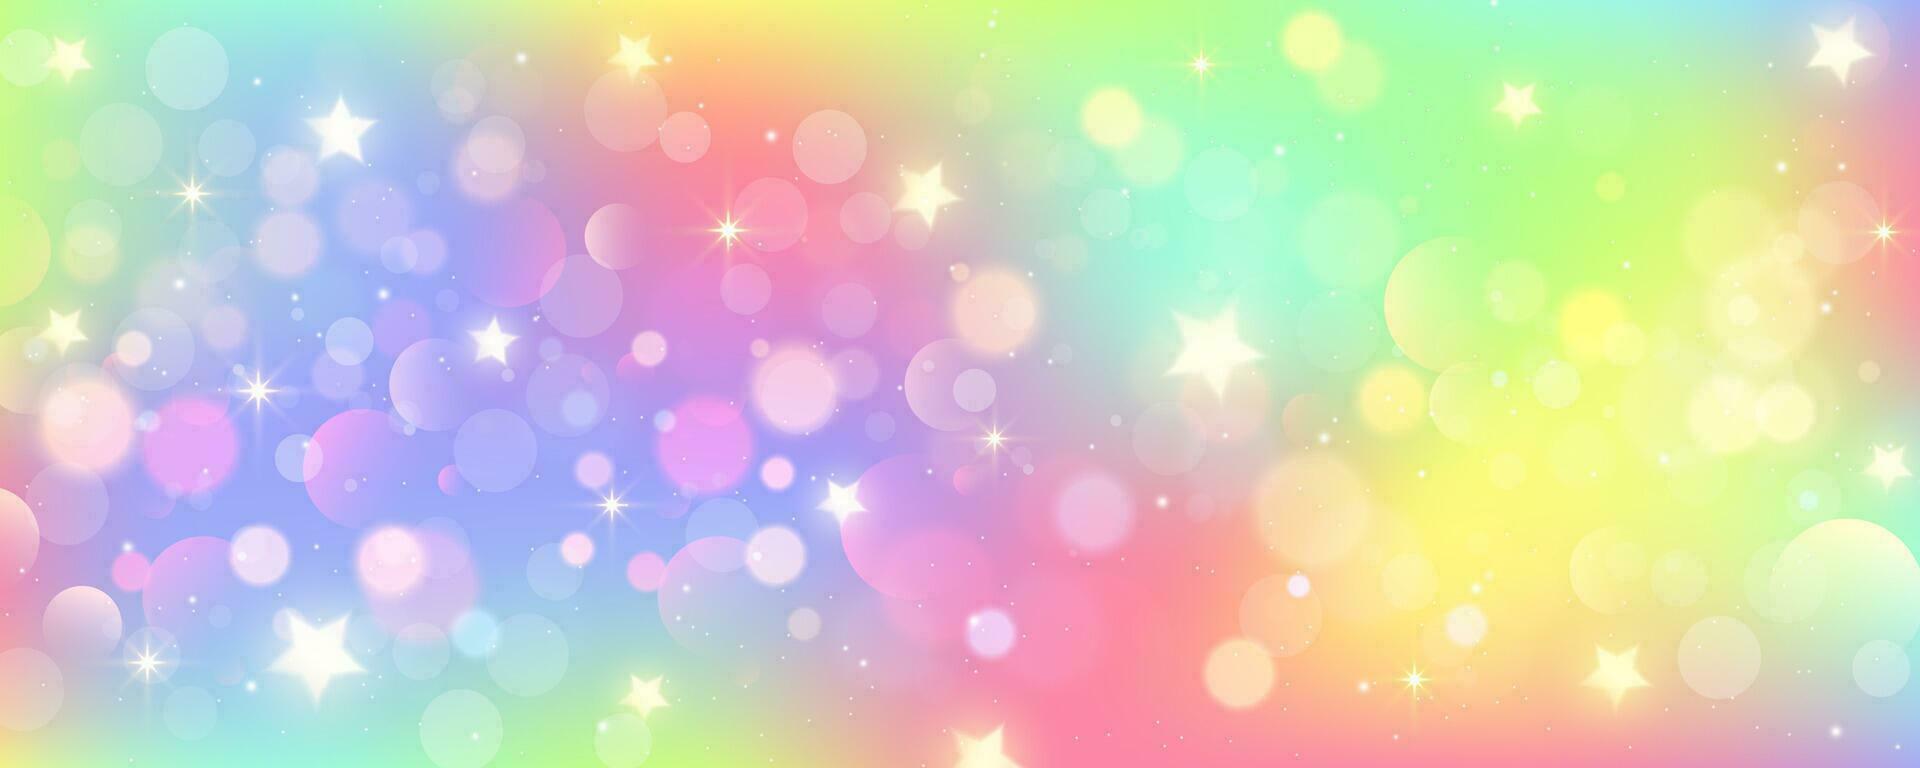 regenboog eenhoorn achtergrond. pastel roze kleur lucht met sterren. holografische fantasie afdrukken met bokeh. vector behang voor prinses meisje ontwerp.